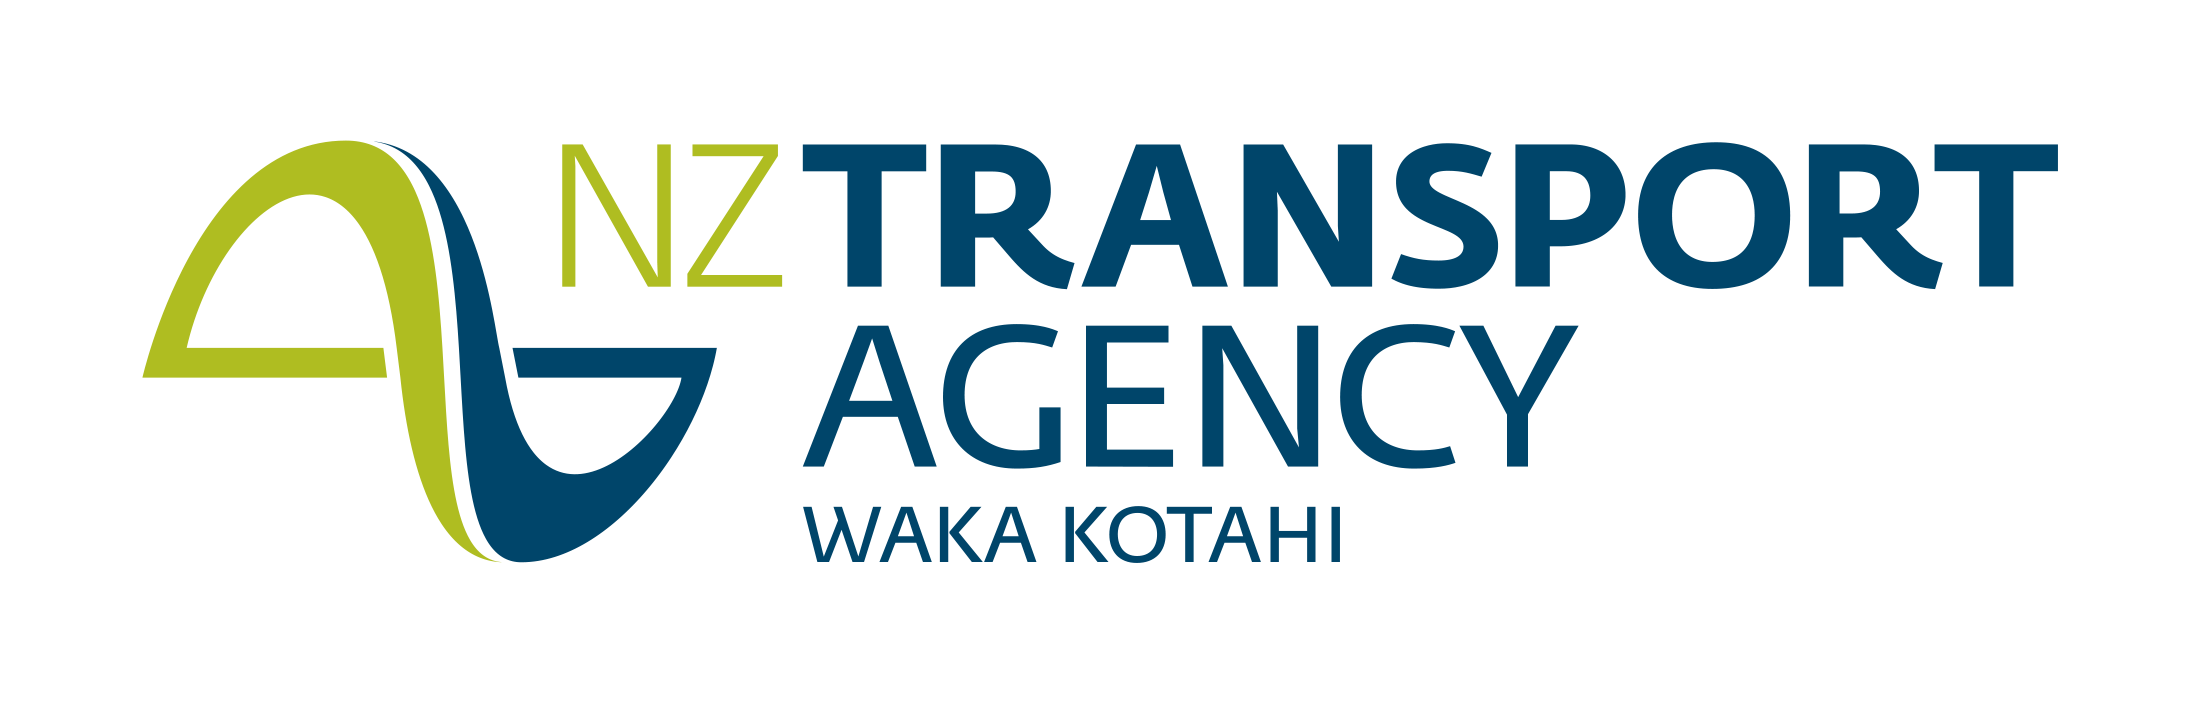 NZTA_Logo_RGB